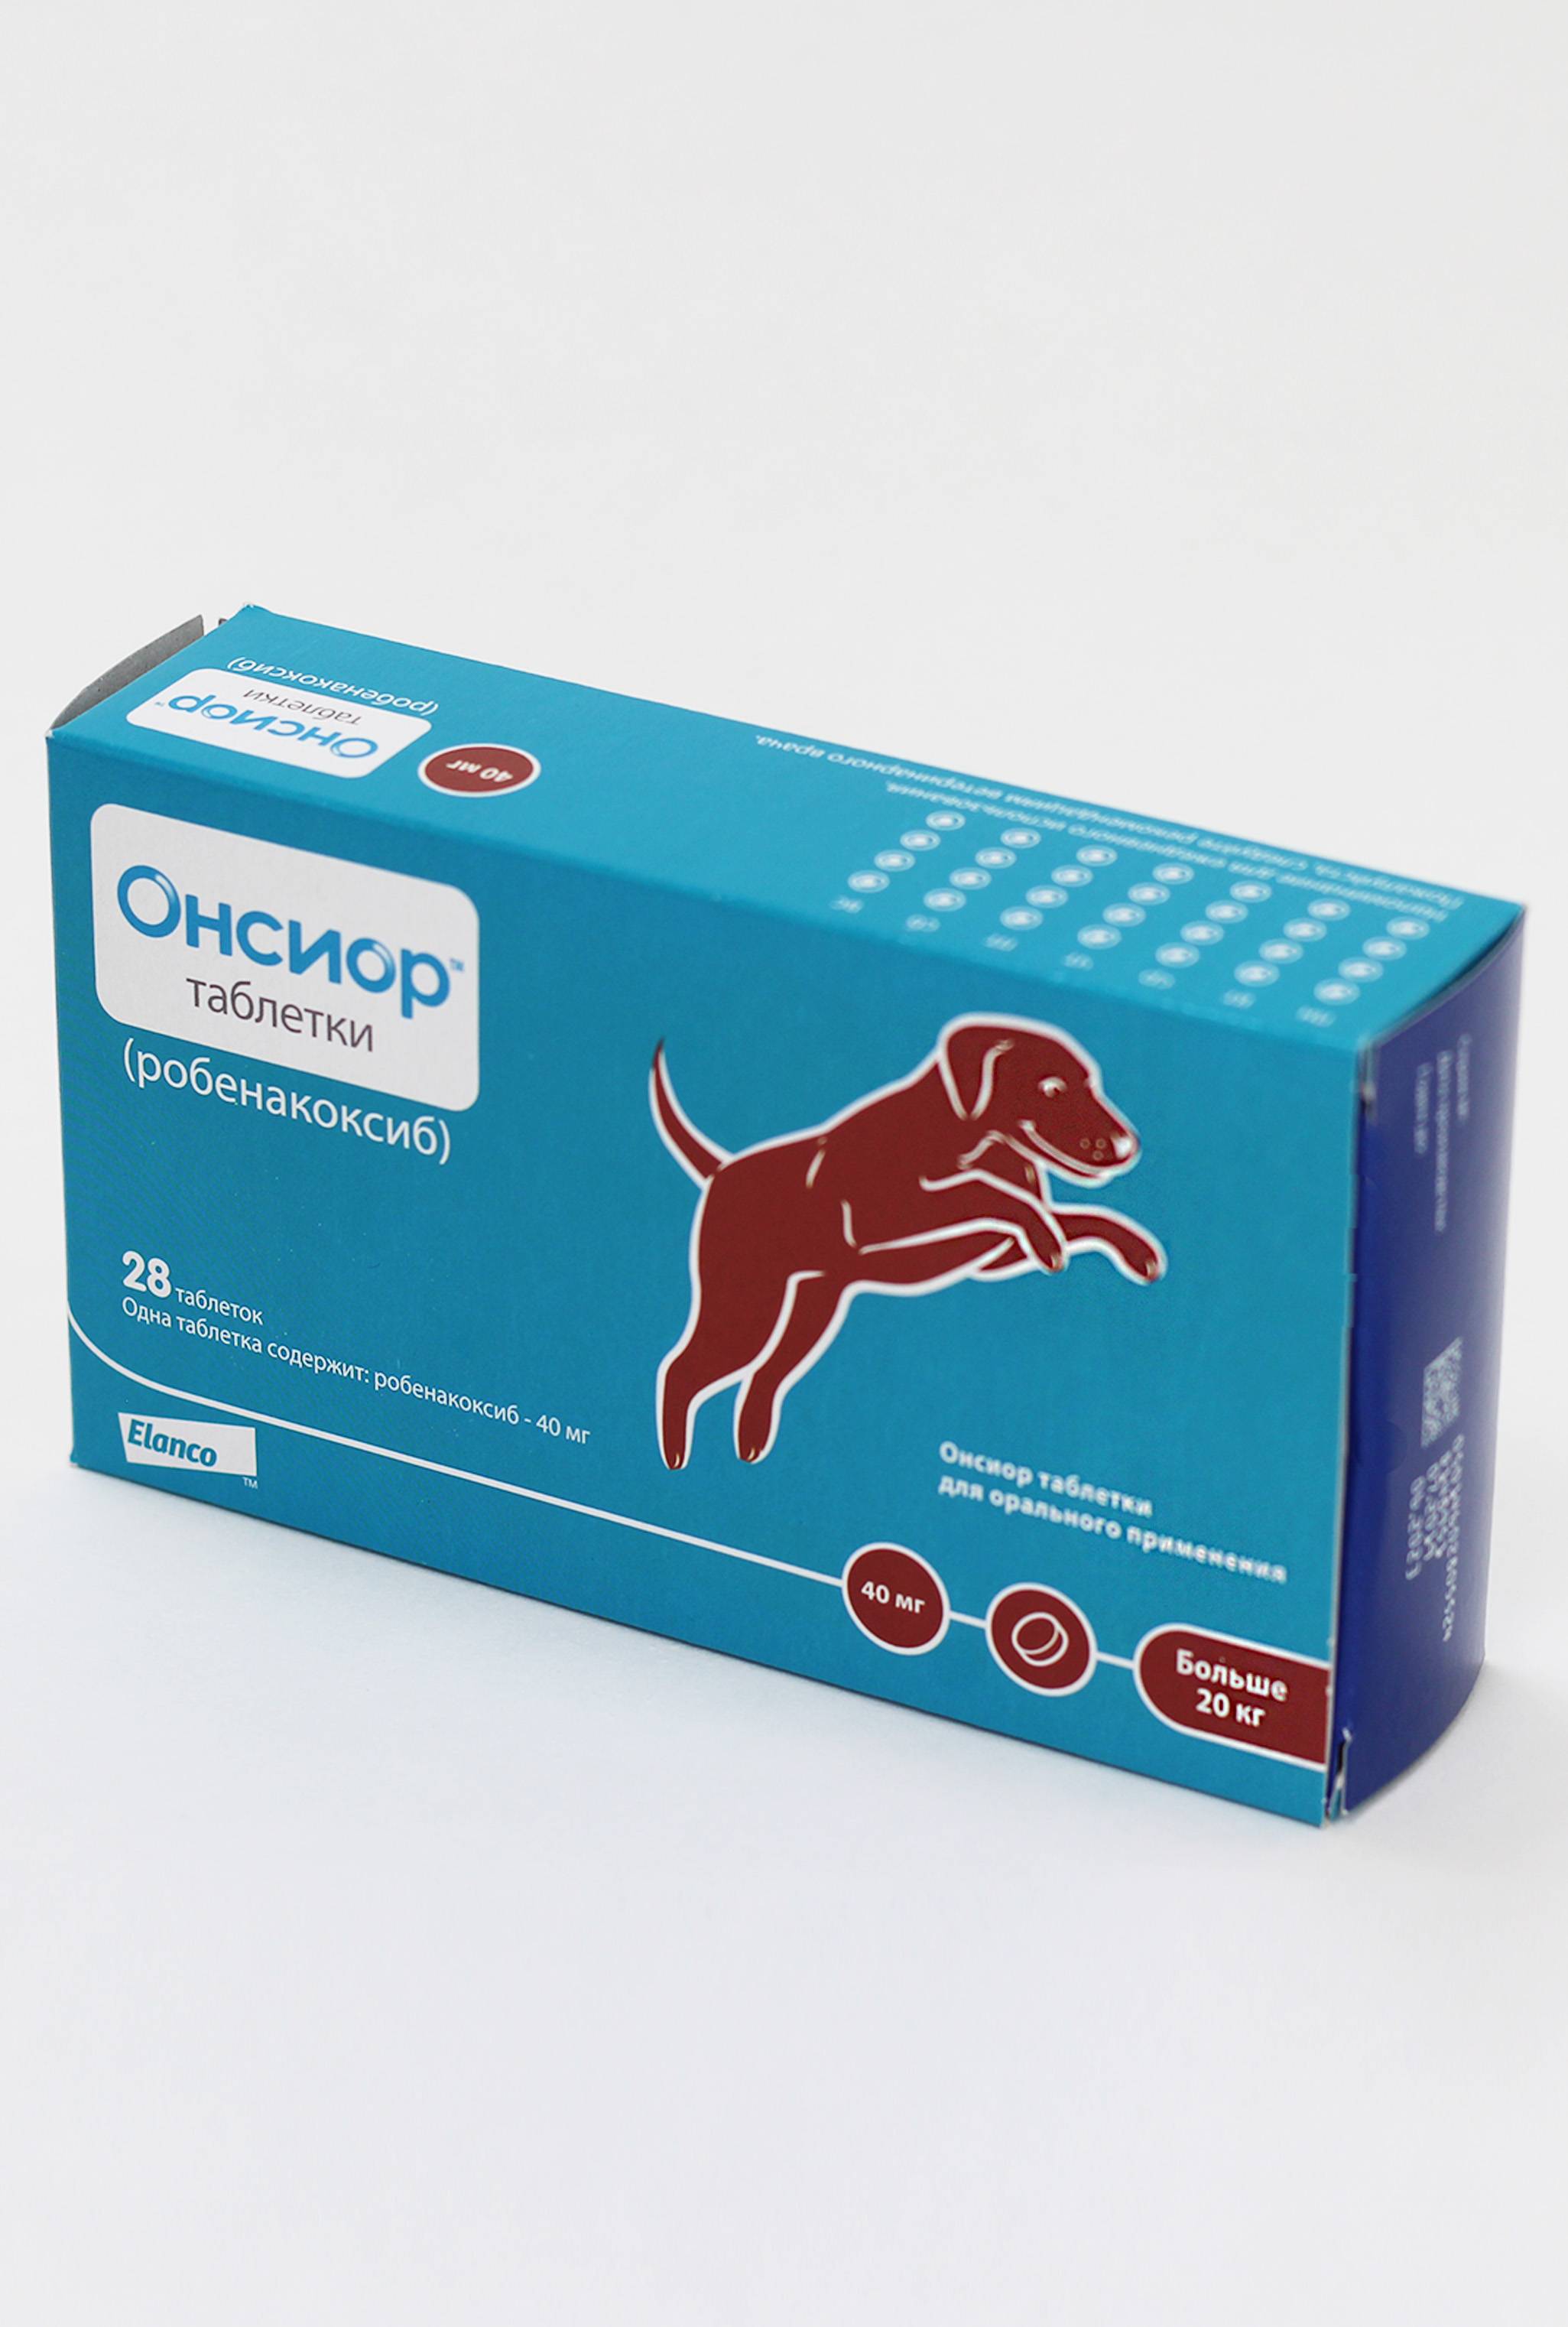 Насколько безопасен препарат онсиор для собак и как его правильно использовать?